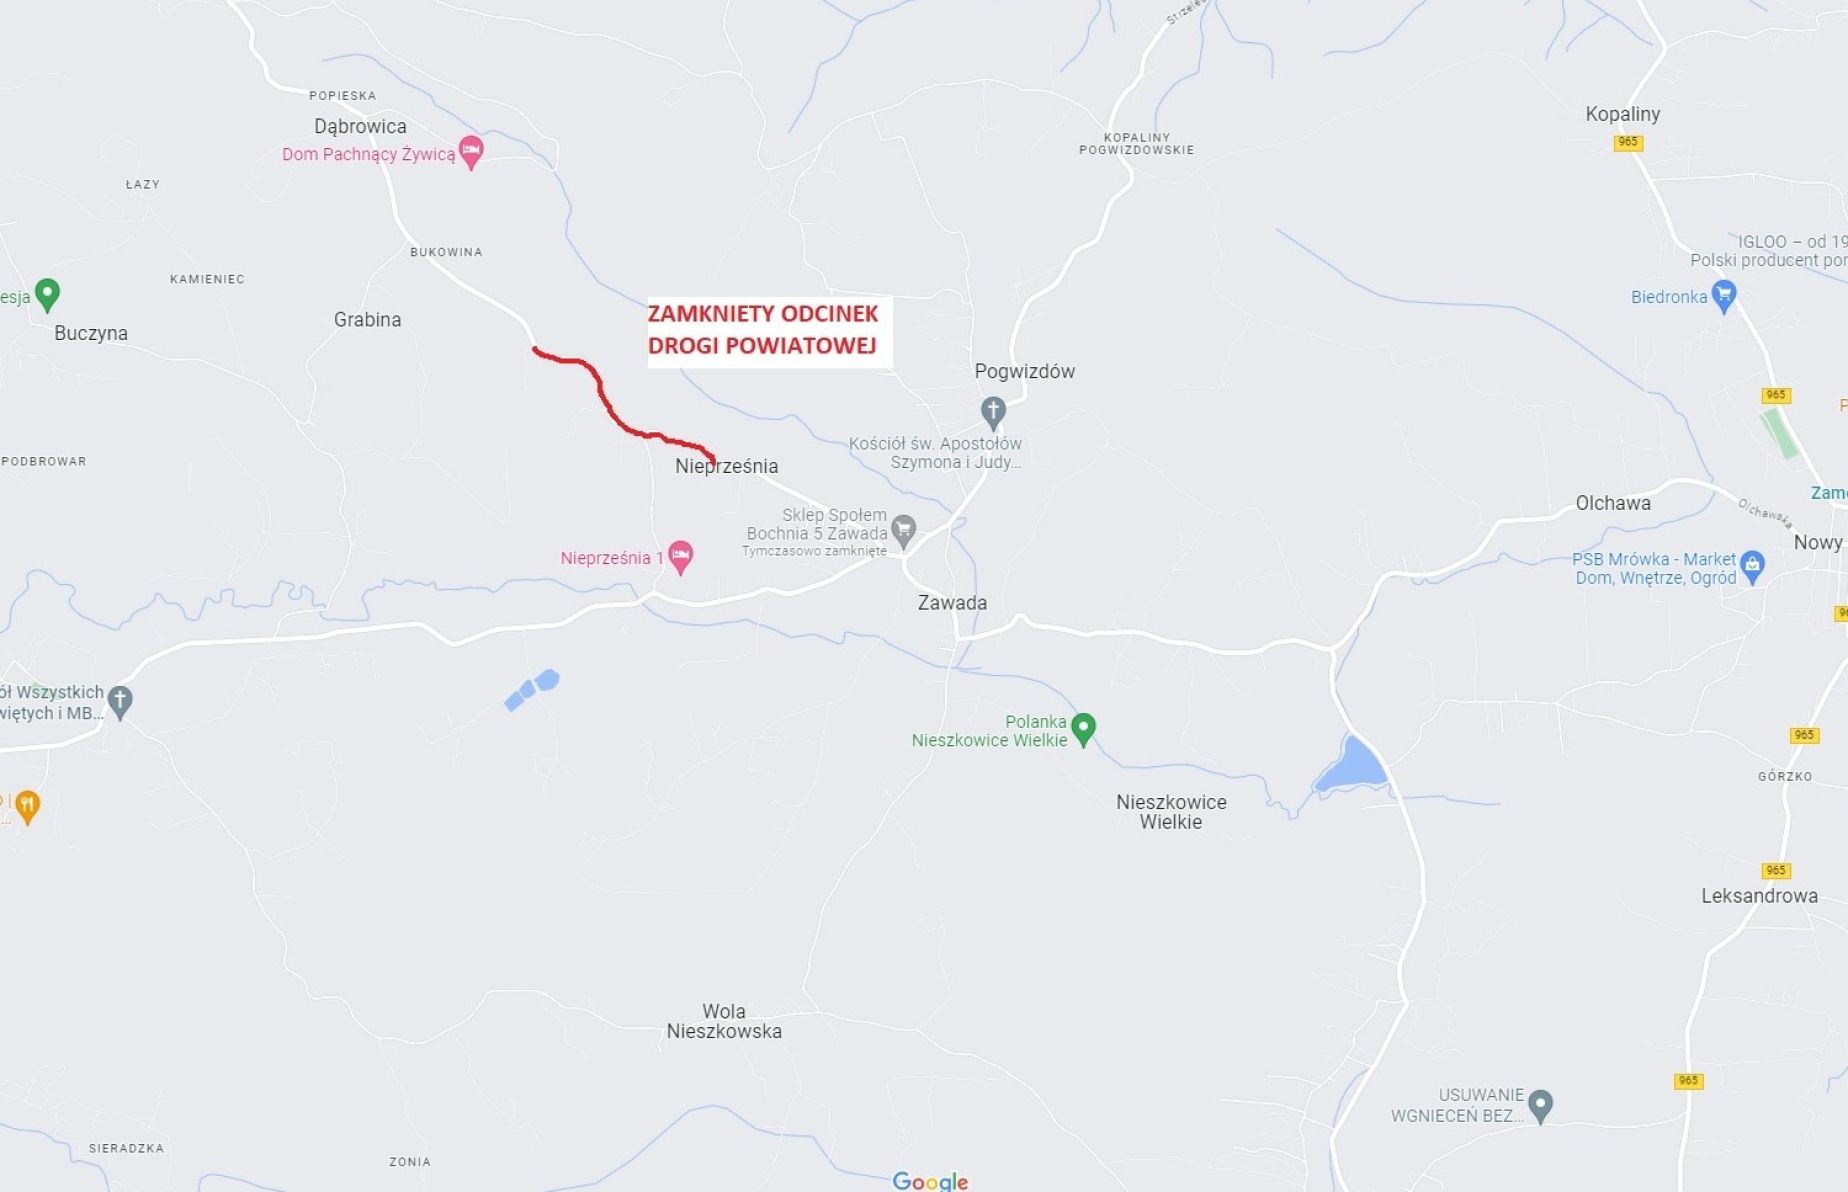 Zamknieta droga powiatowa w Nieprześni